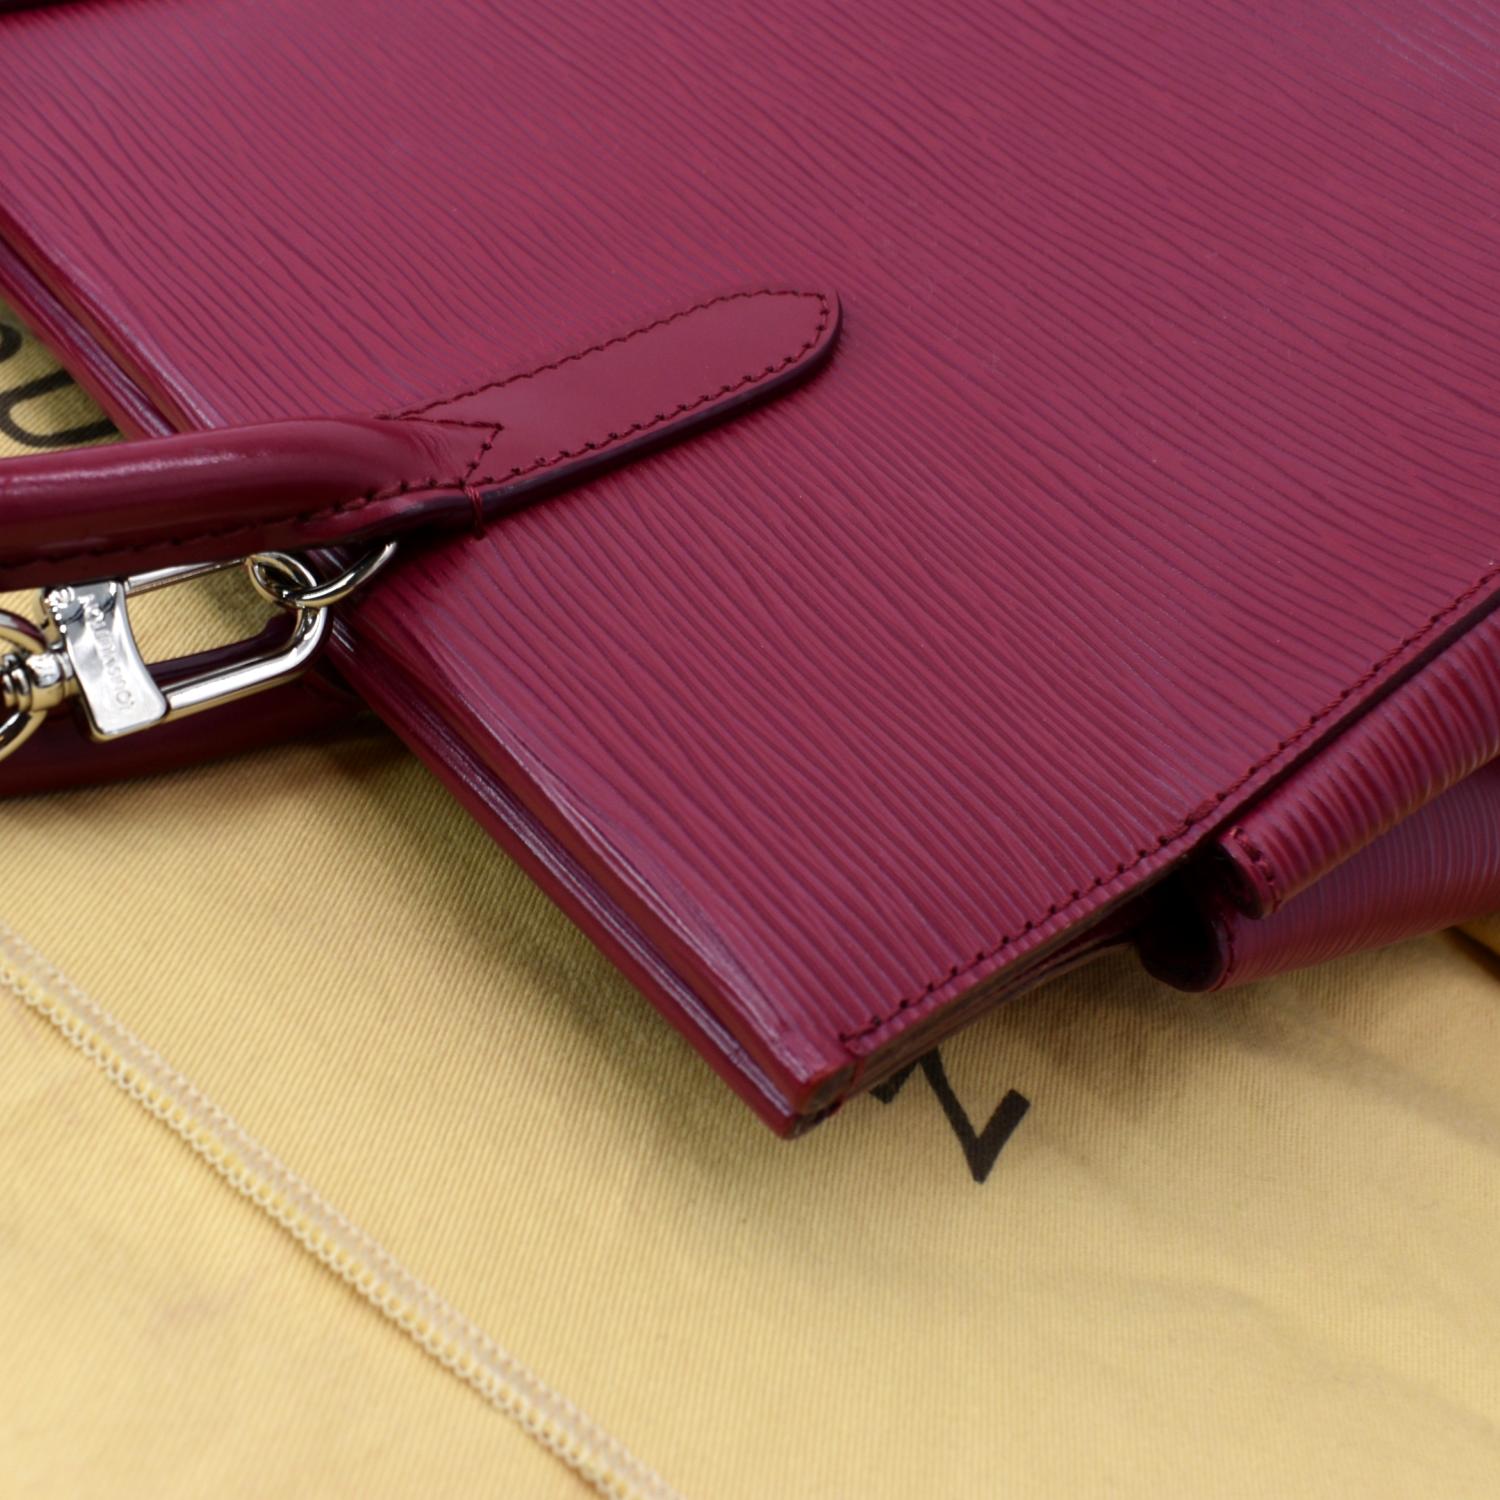 Louis Vuitton Epi Marly MM Pink Bag